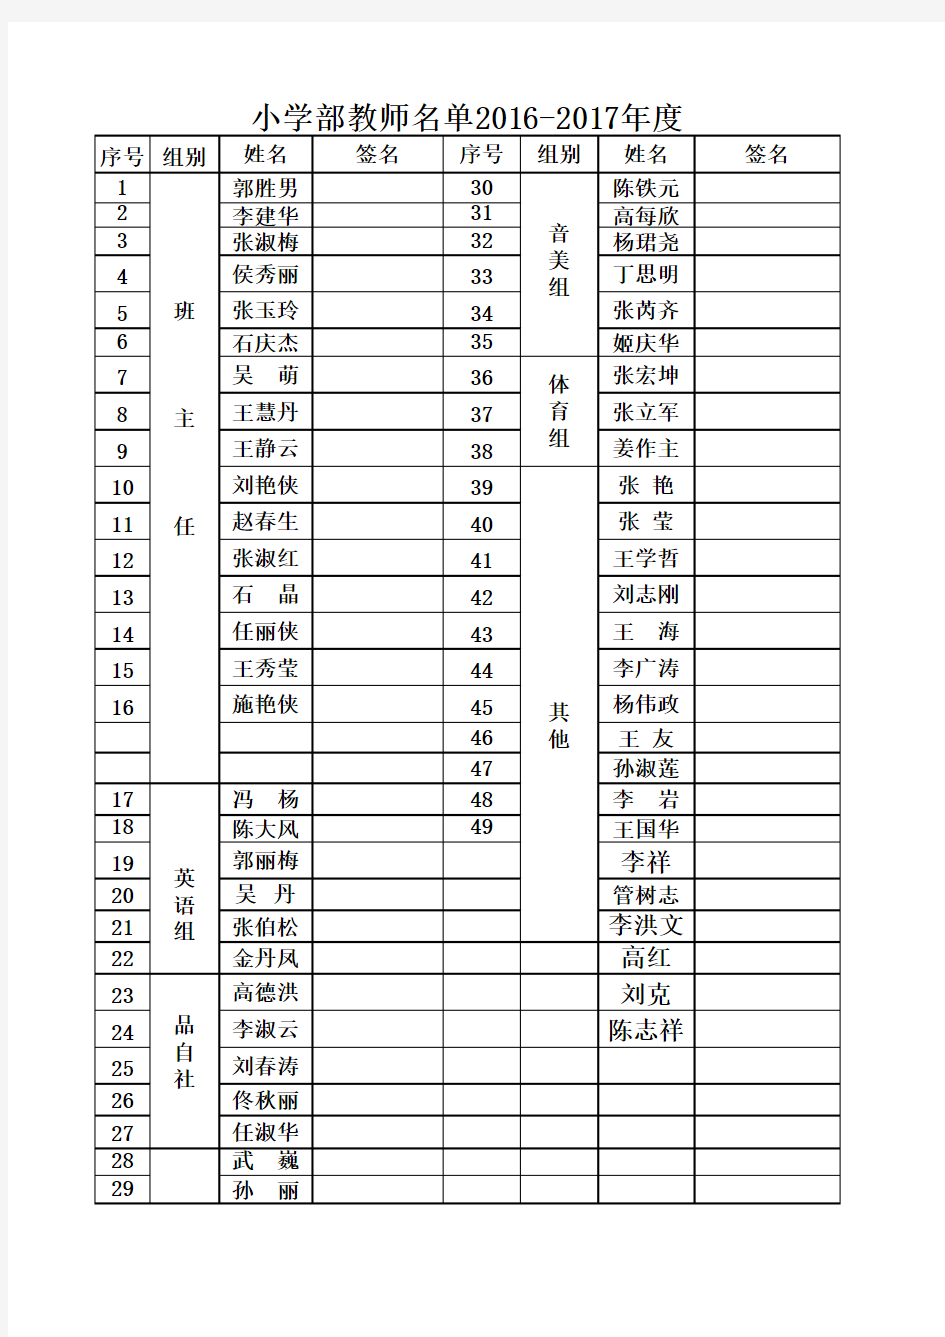 小学部所有教师名单2016-2017年度2017.10.28